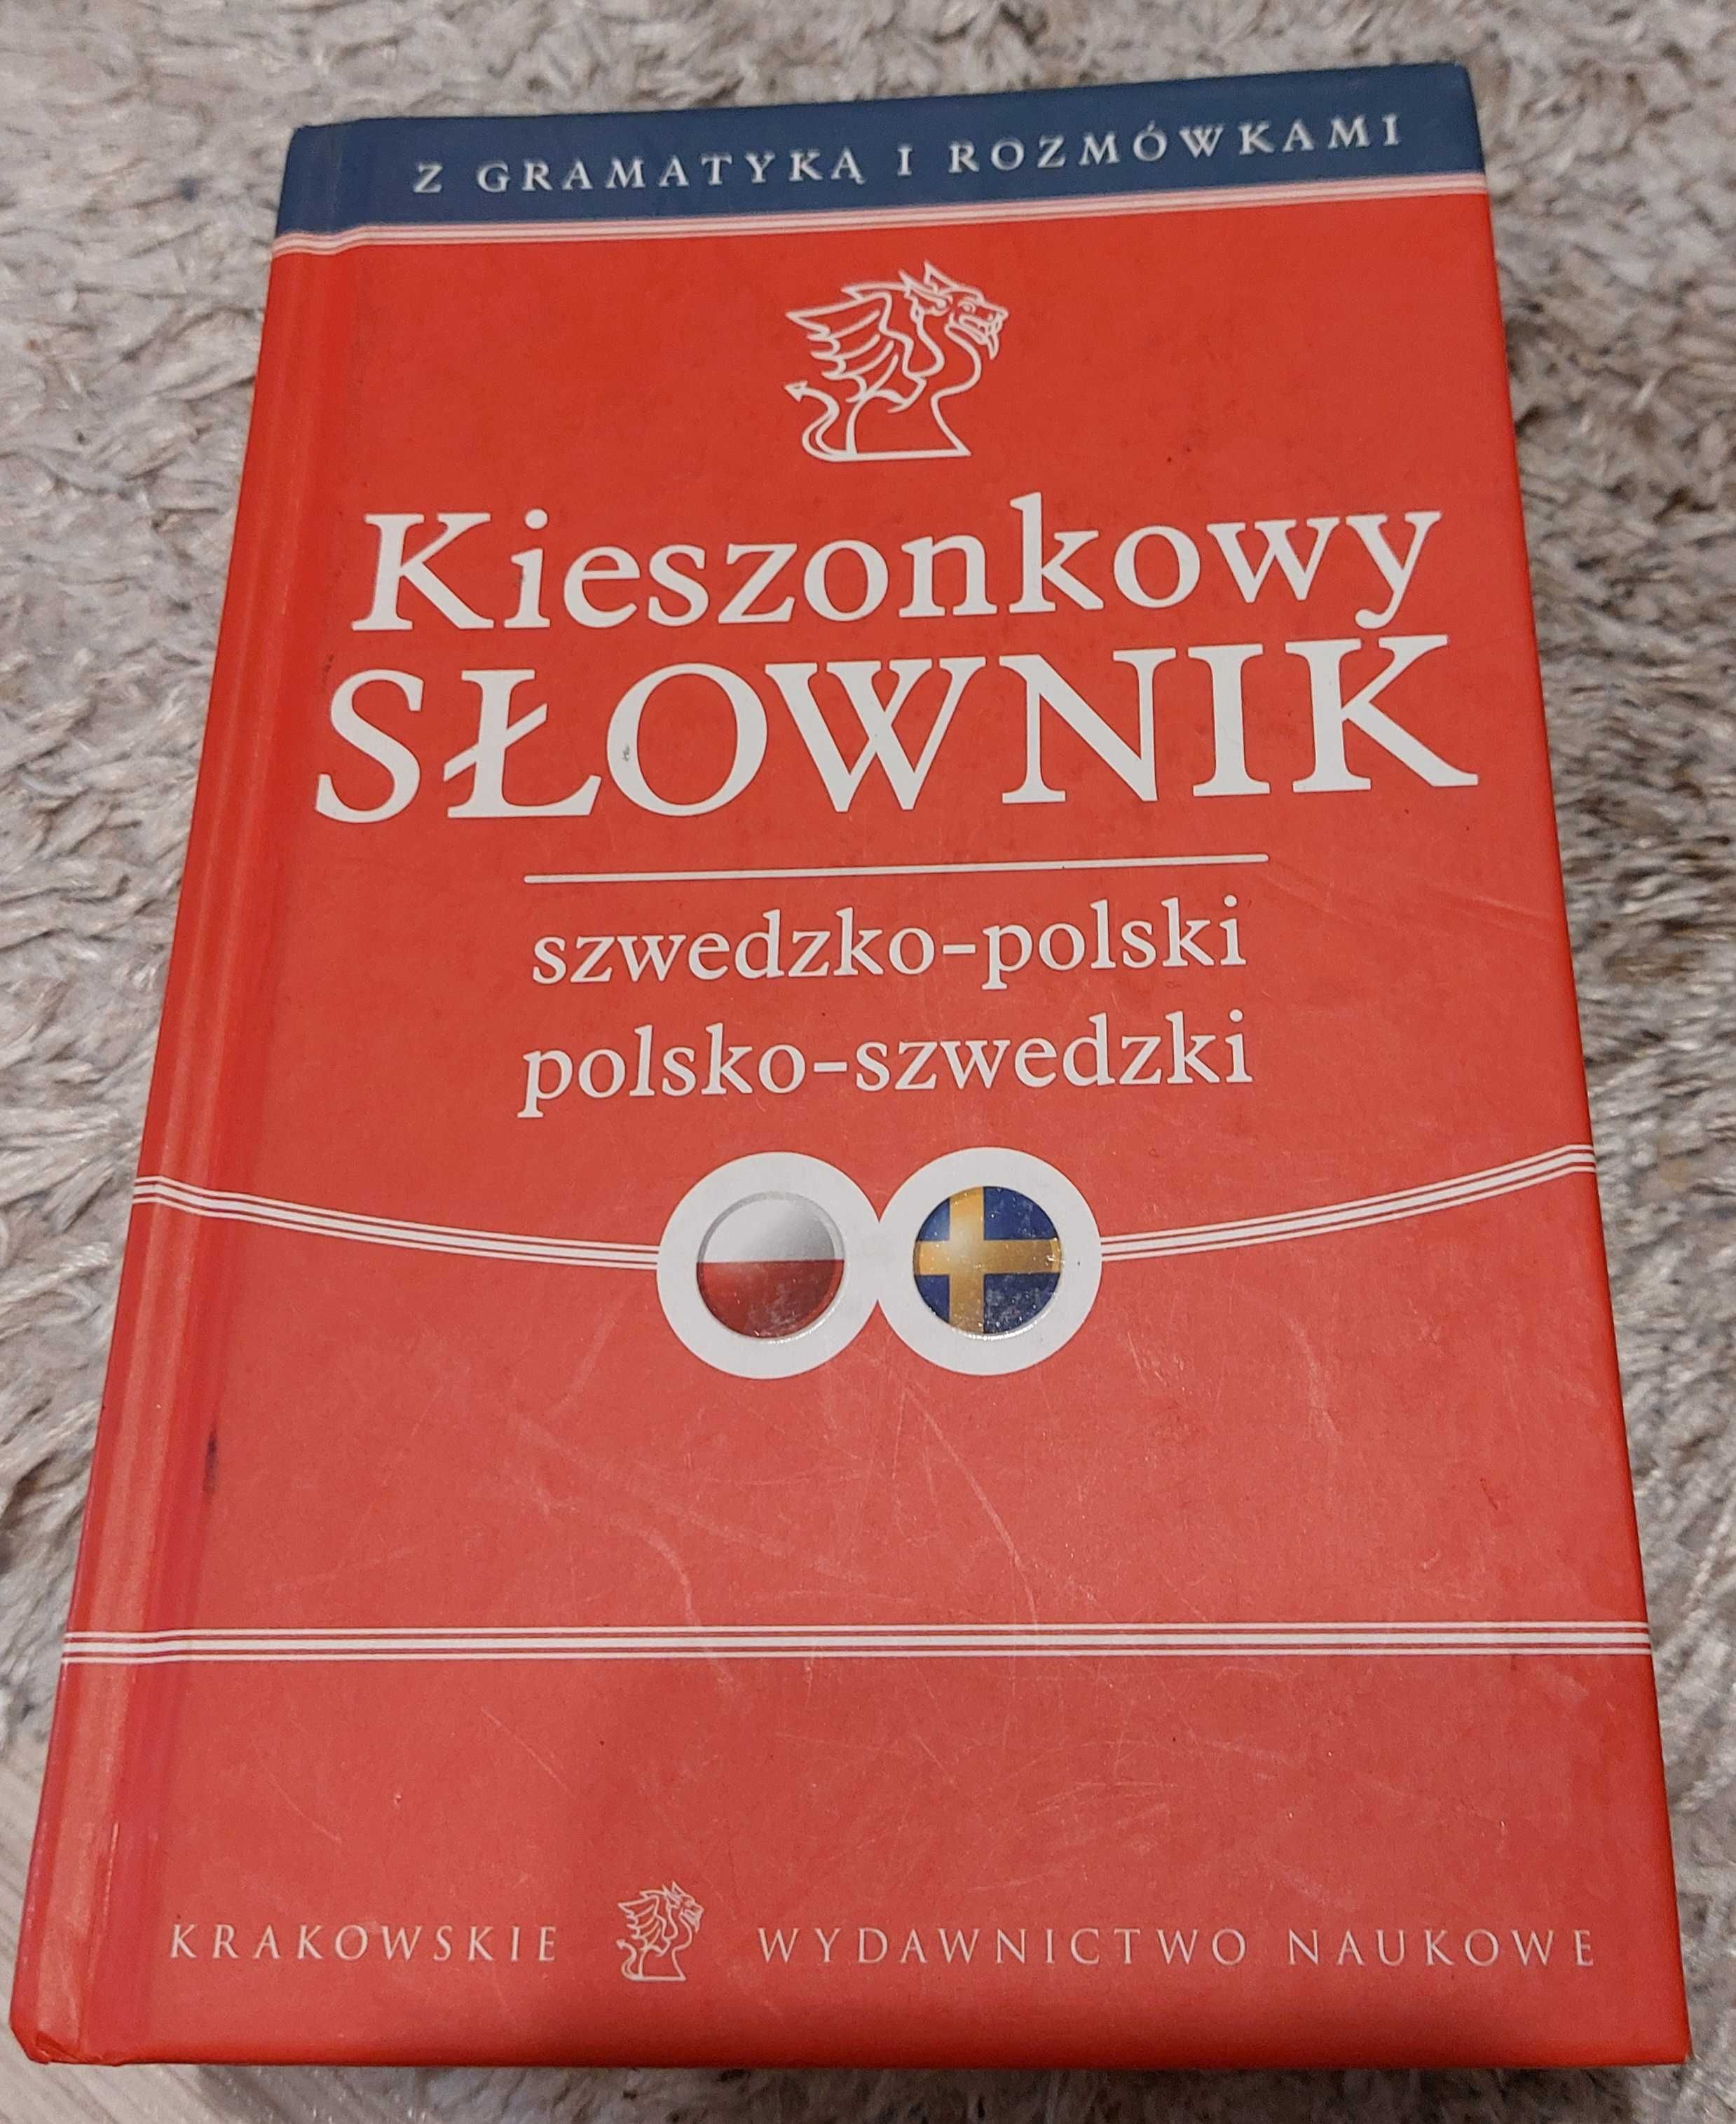 kieszonkowy słownik szwedzko-polski polsko-szwedzki kwn